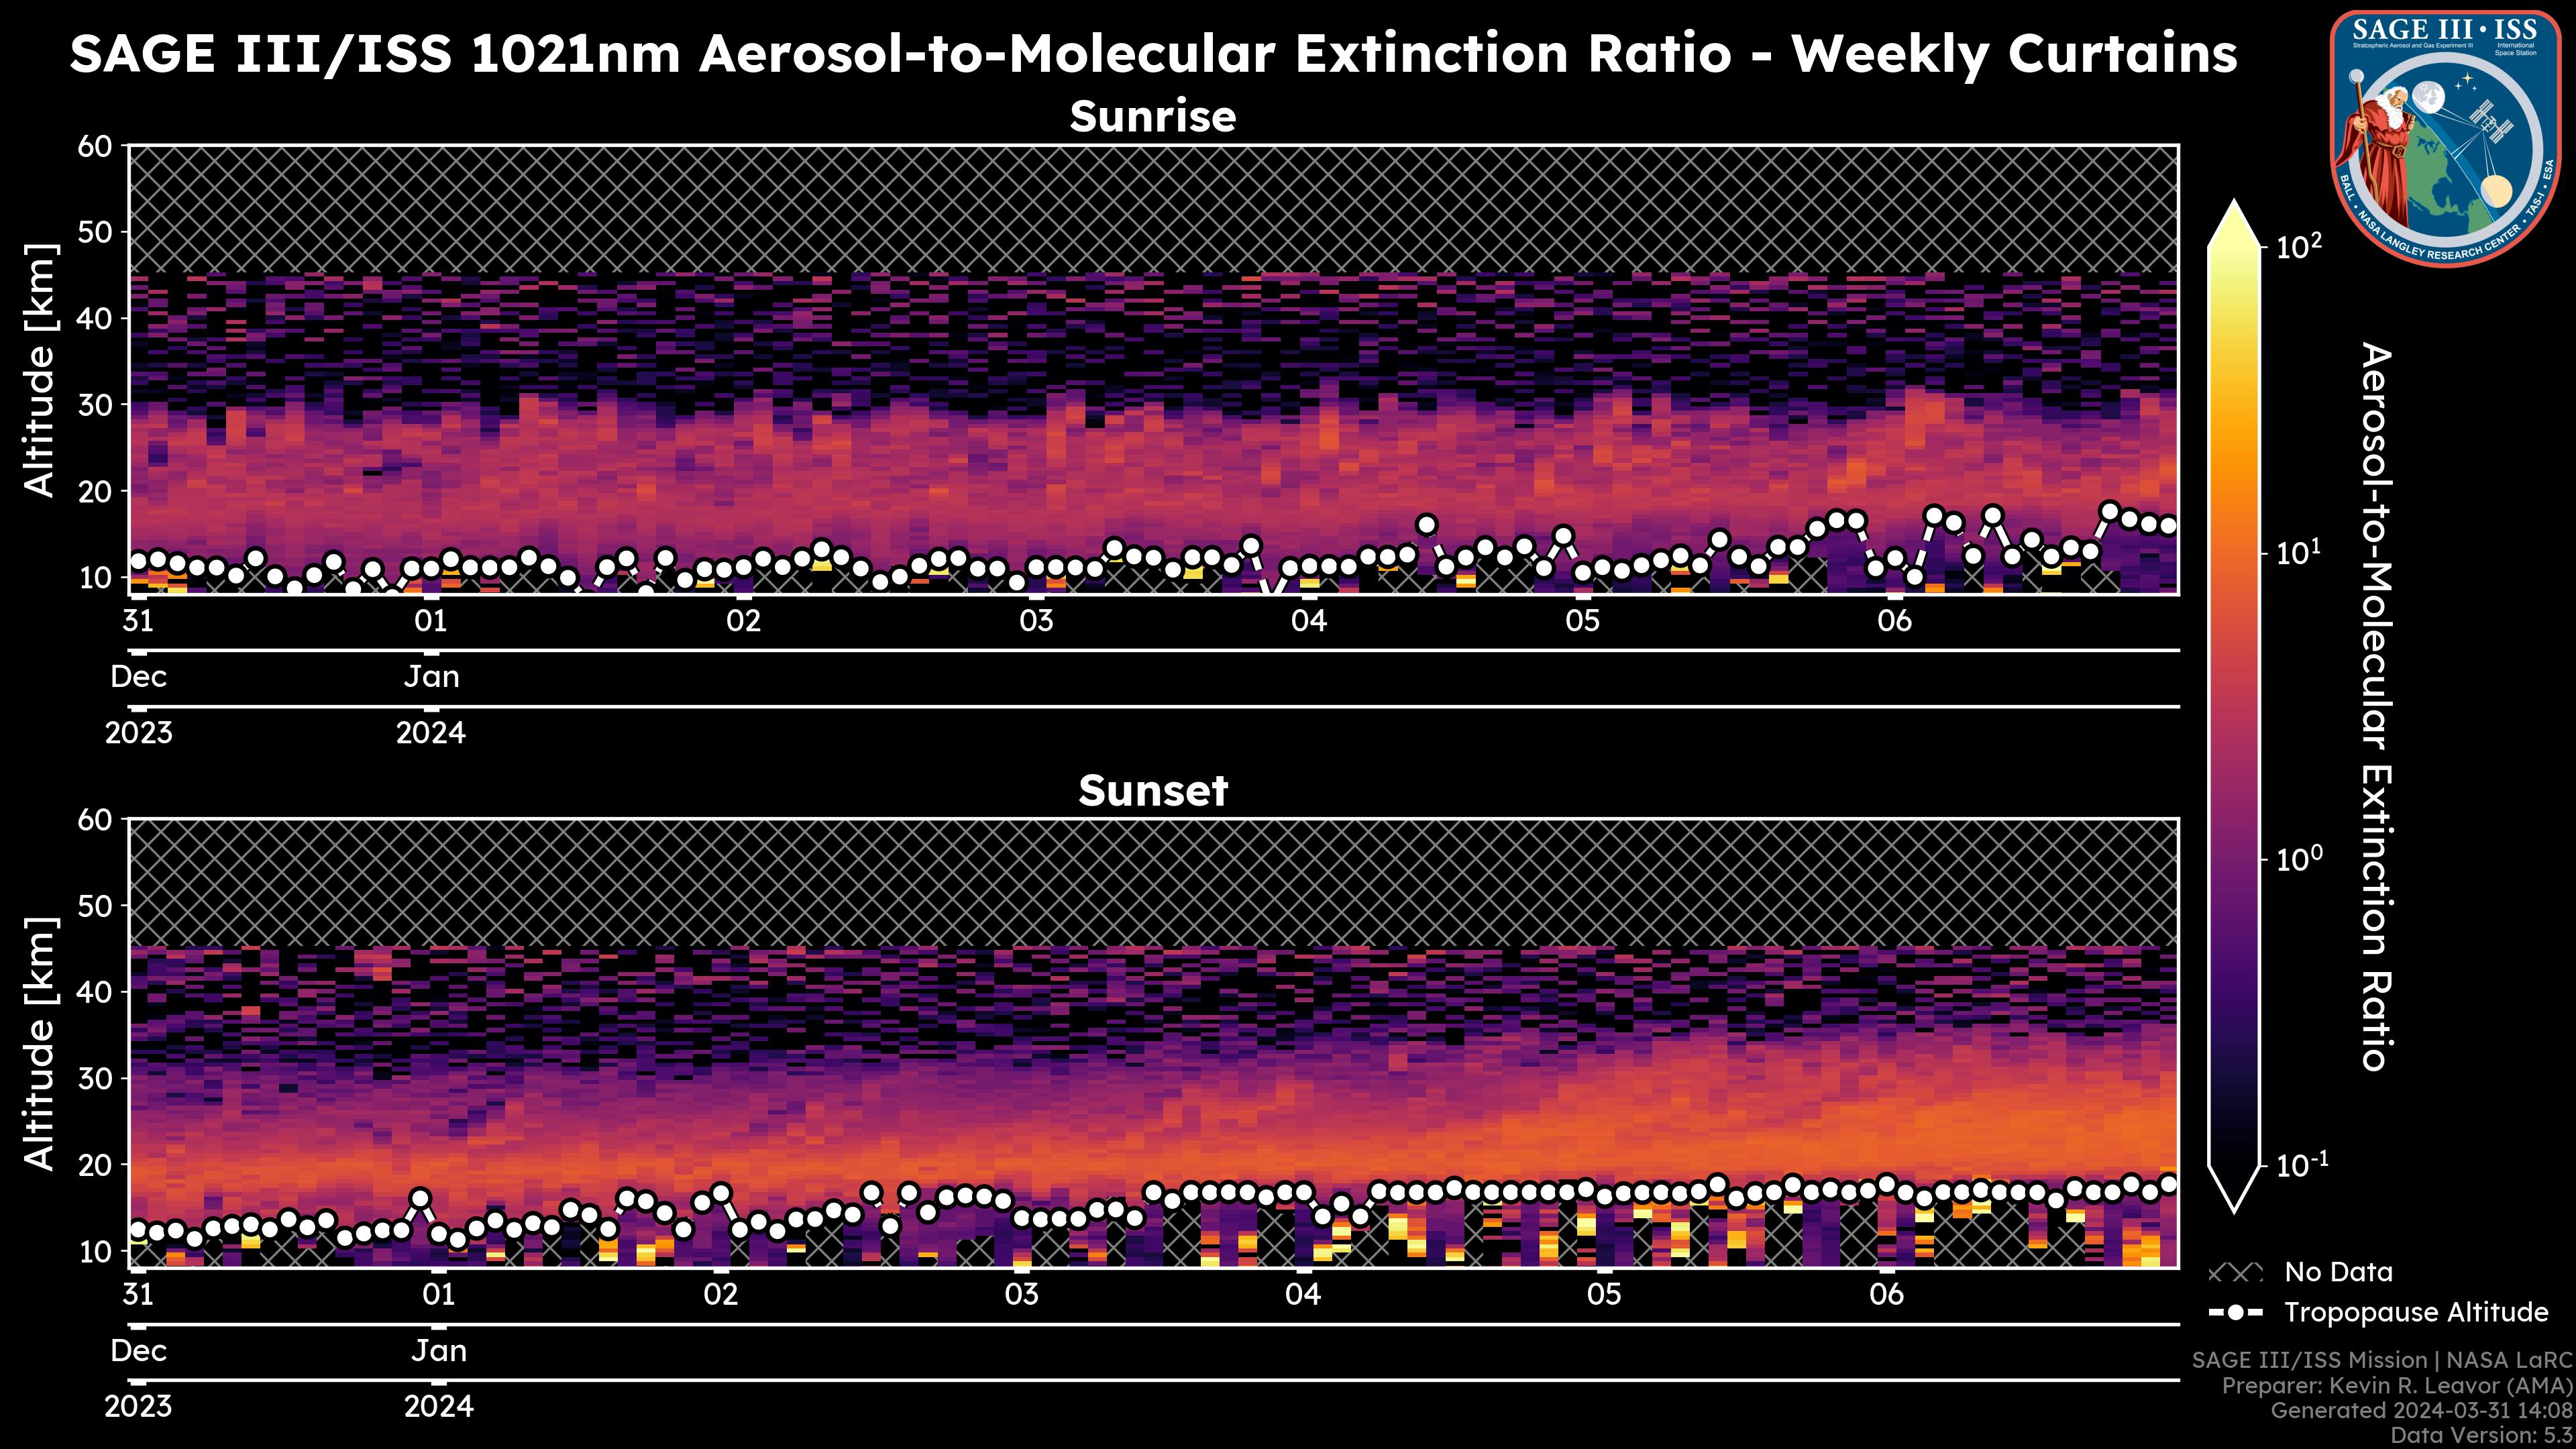 1021nm Aerosol-to-Molecular Extinction Ratio